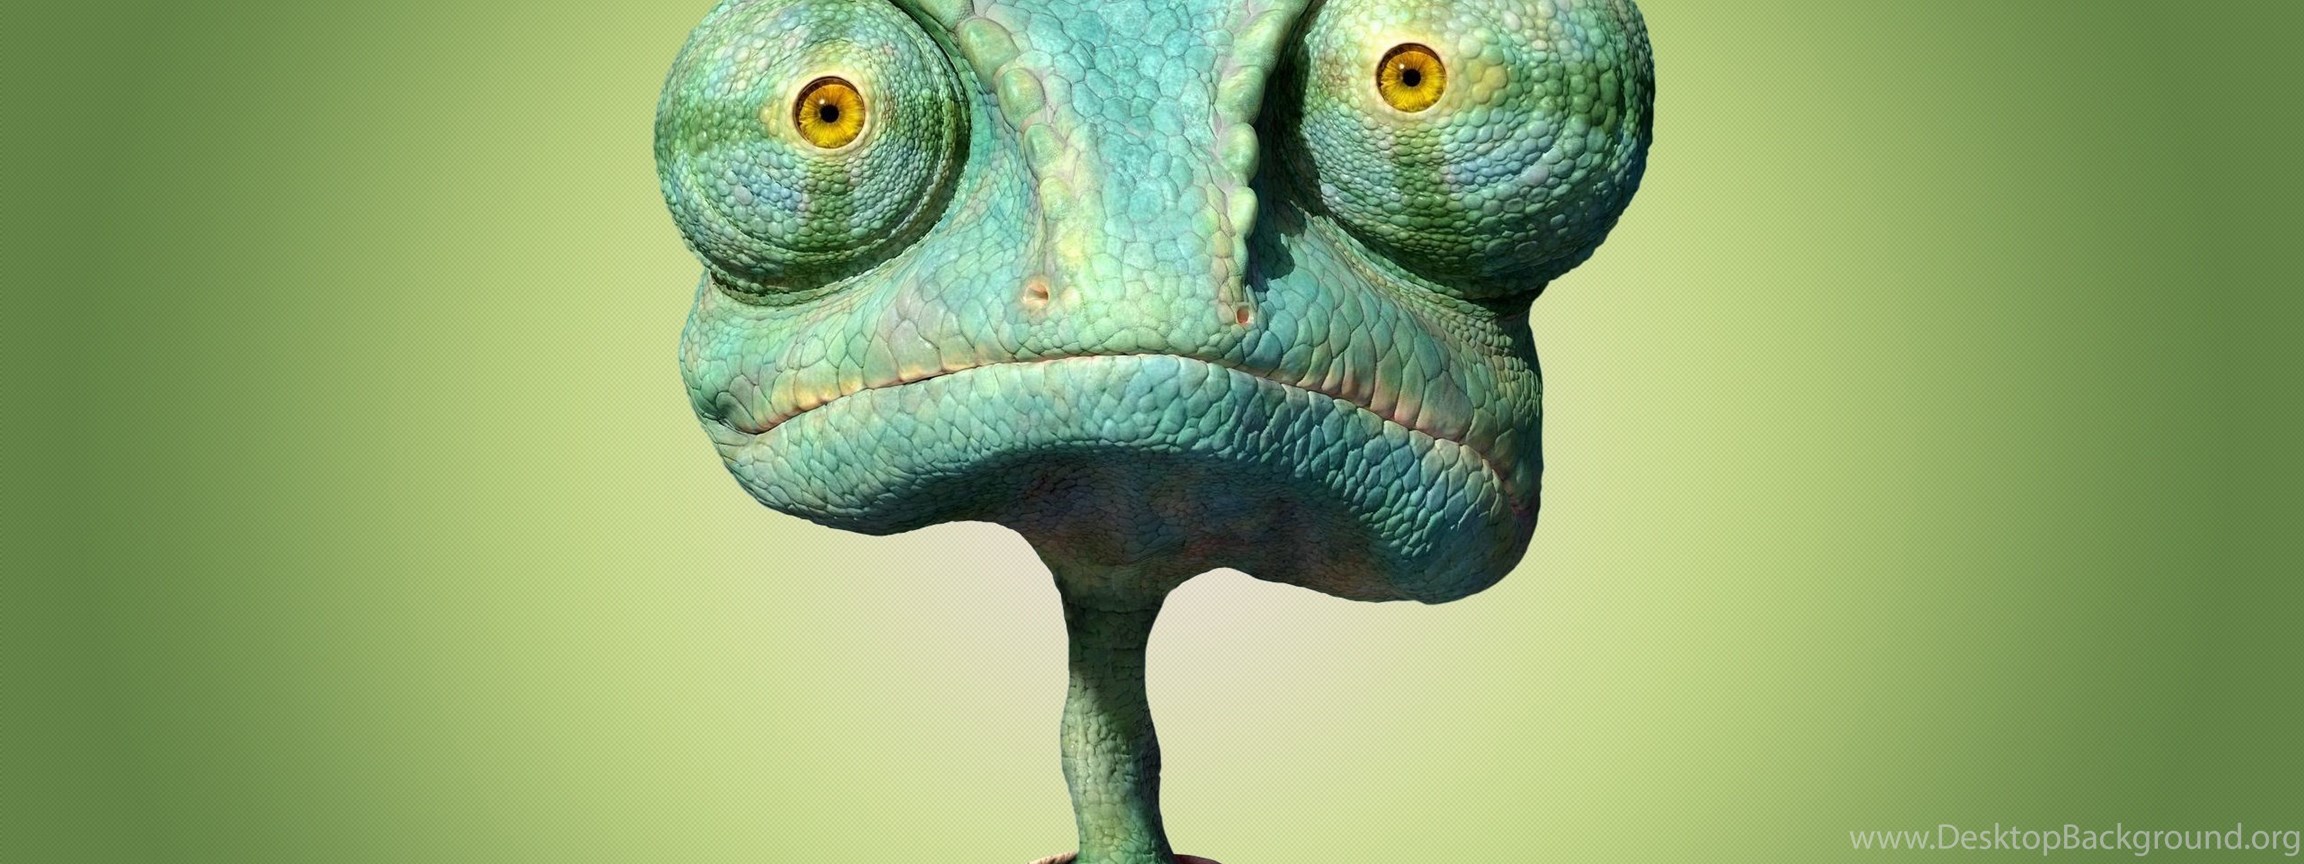 Download Lizard 3D Animal Wallpapers Desktop Free Download Widescreen Dual ...